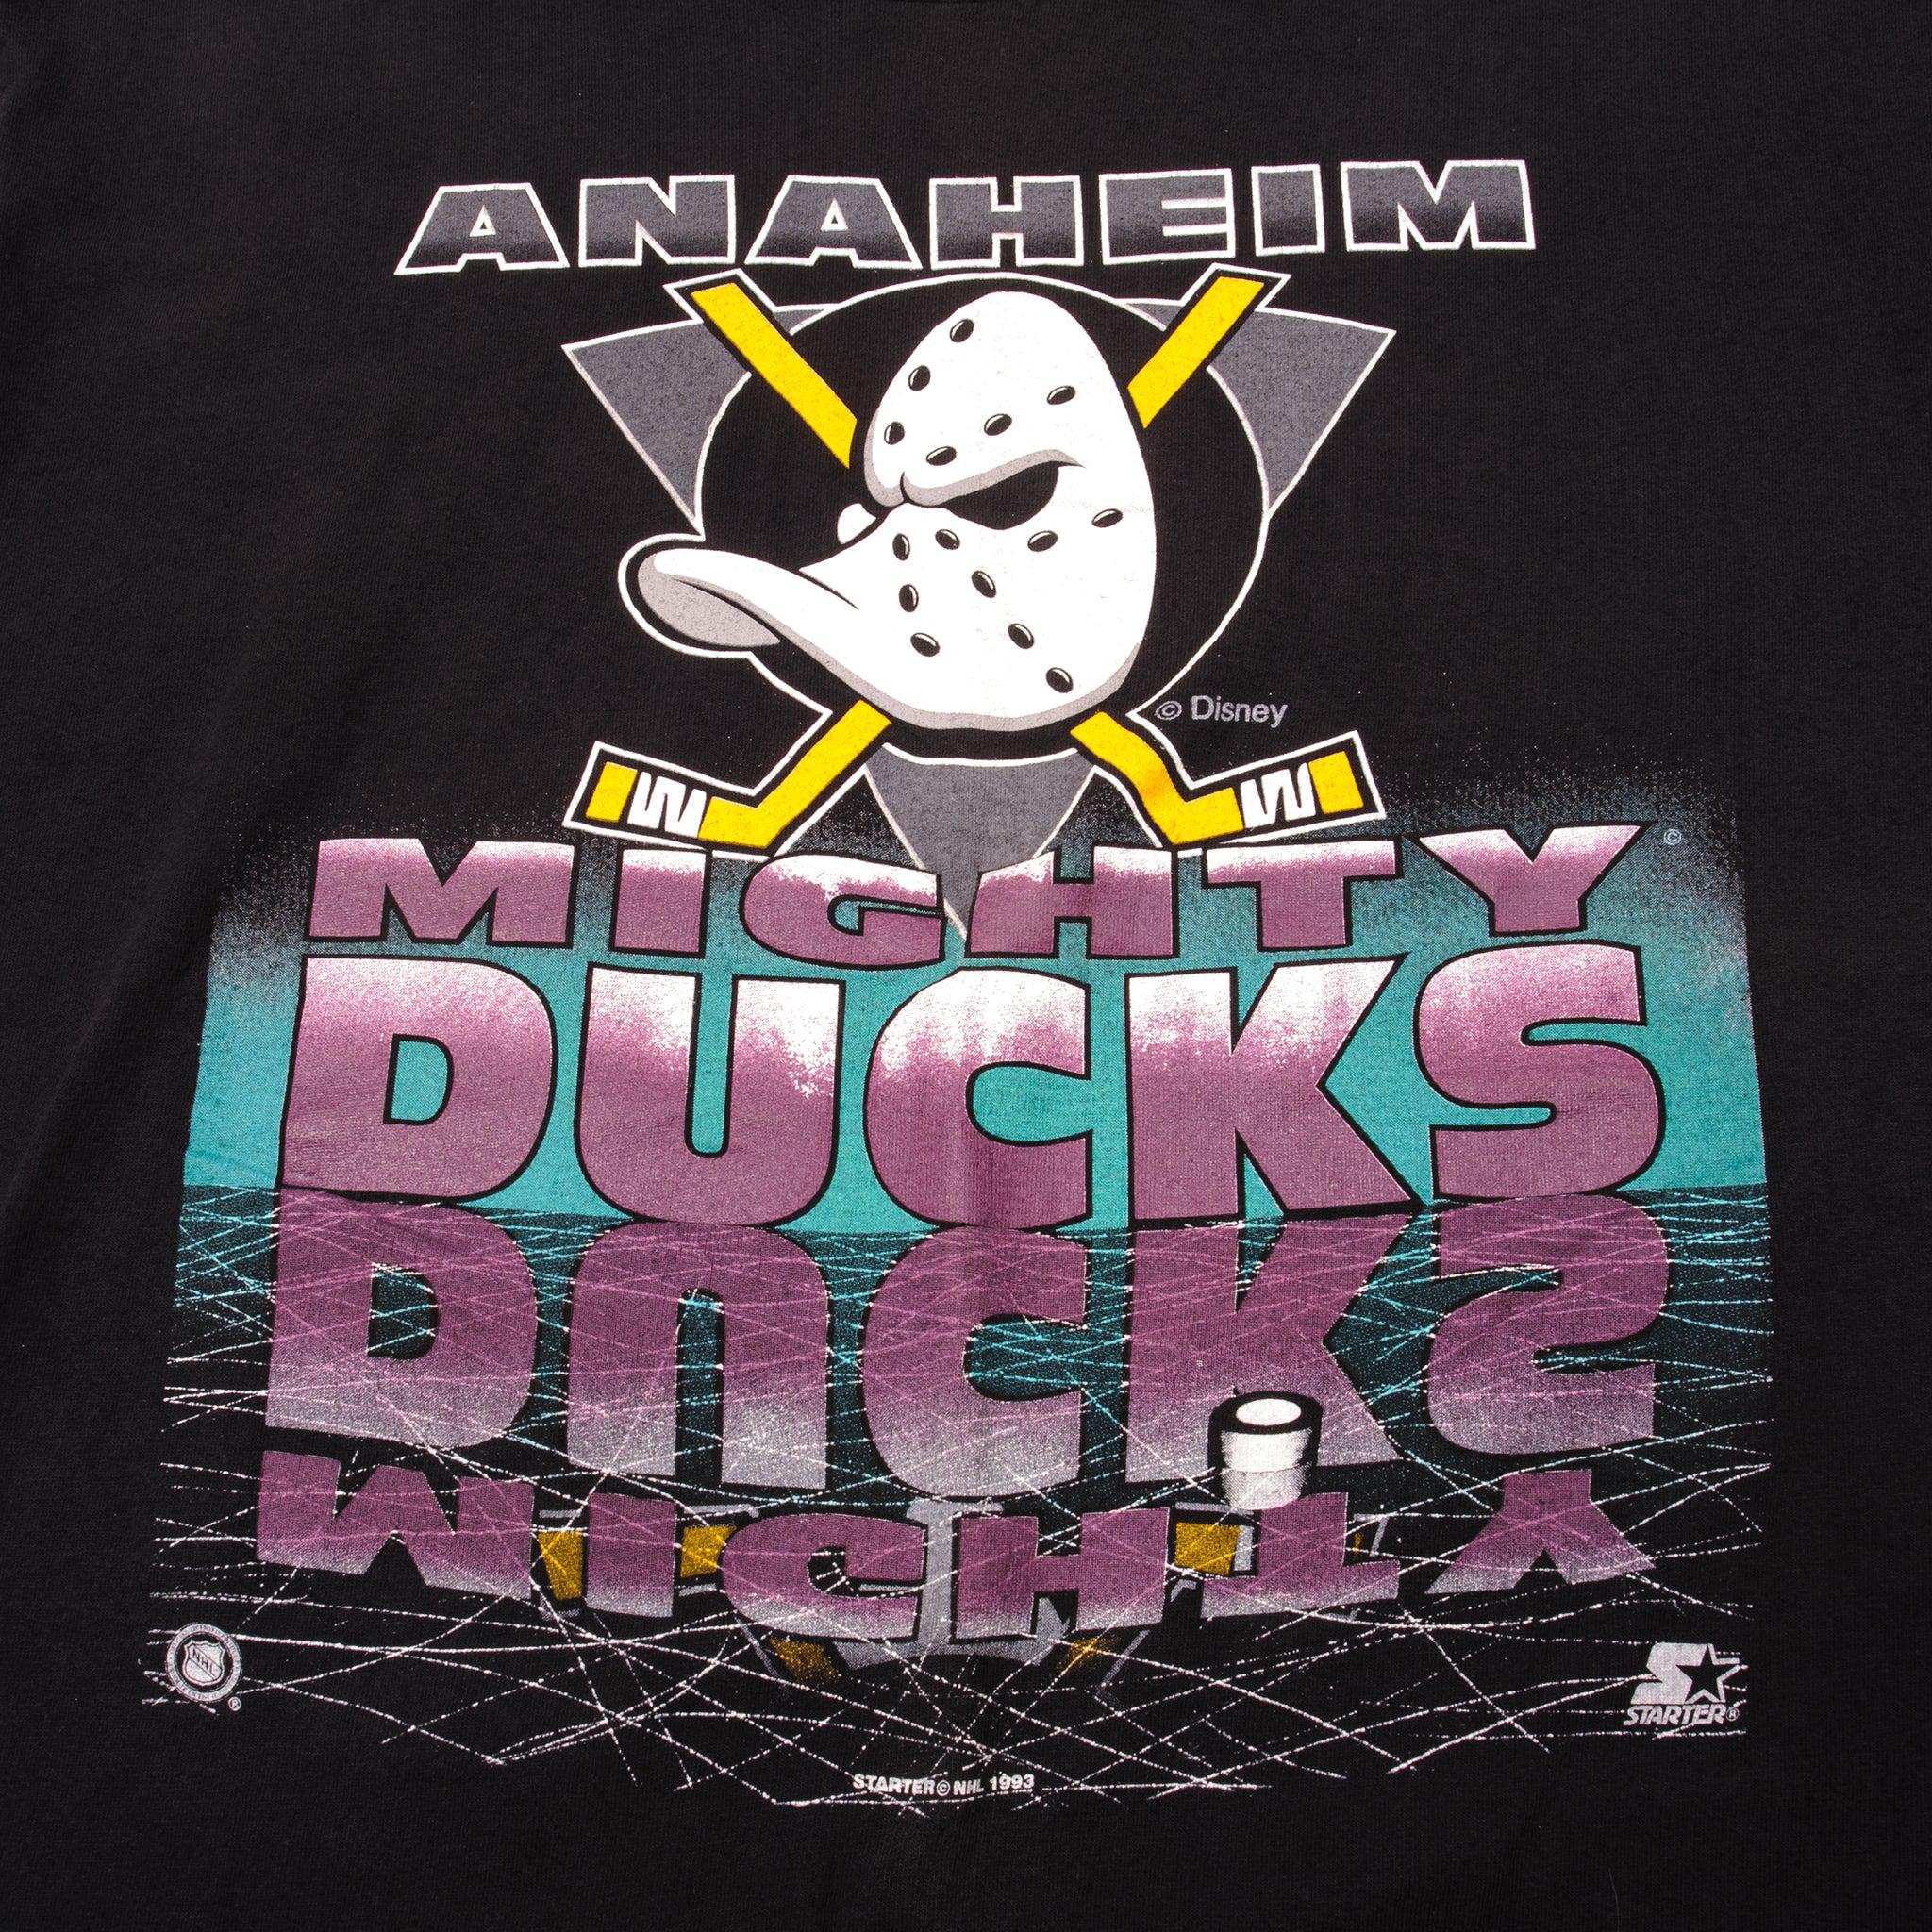 STARTER, Shirts, Vintage 9s Starter Nhl Anaheim Mighty Ducks Jersey Sz L